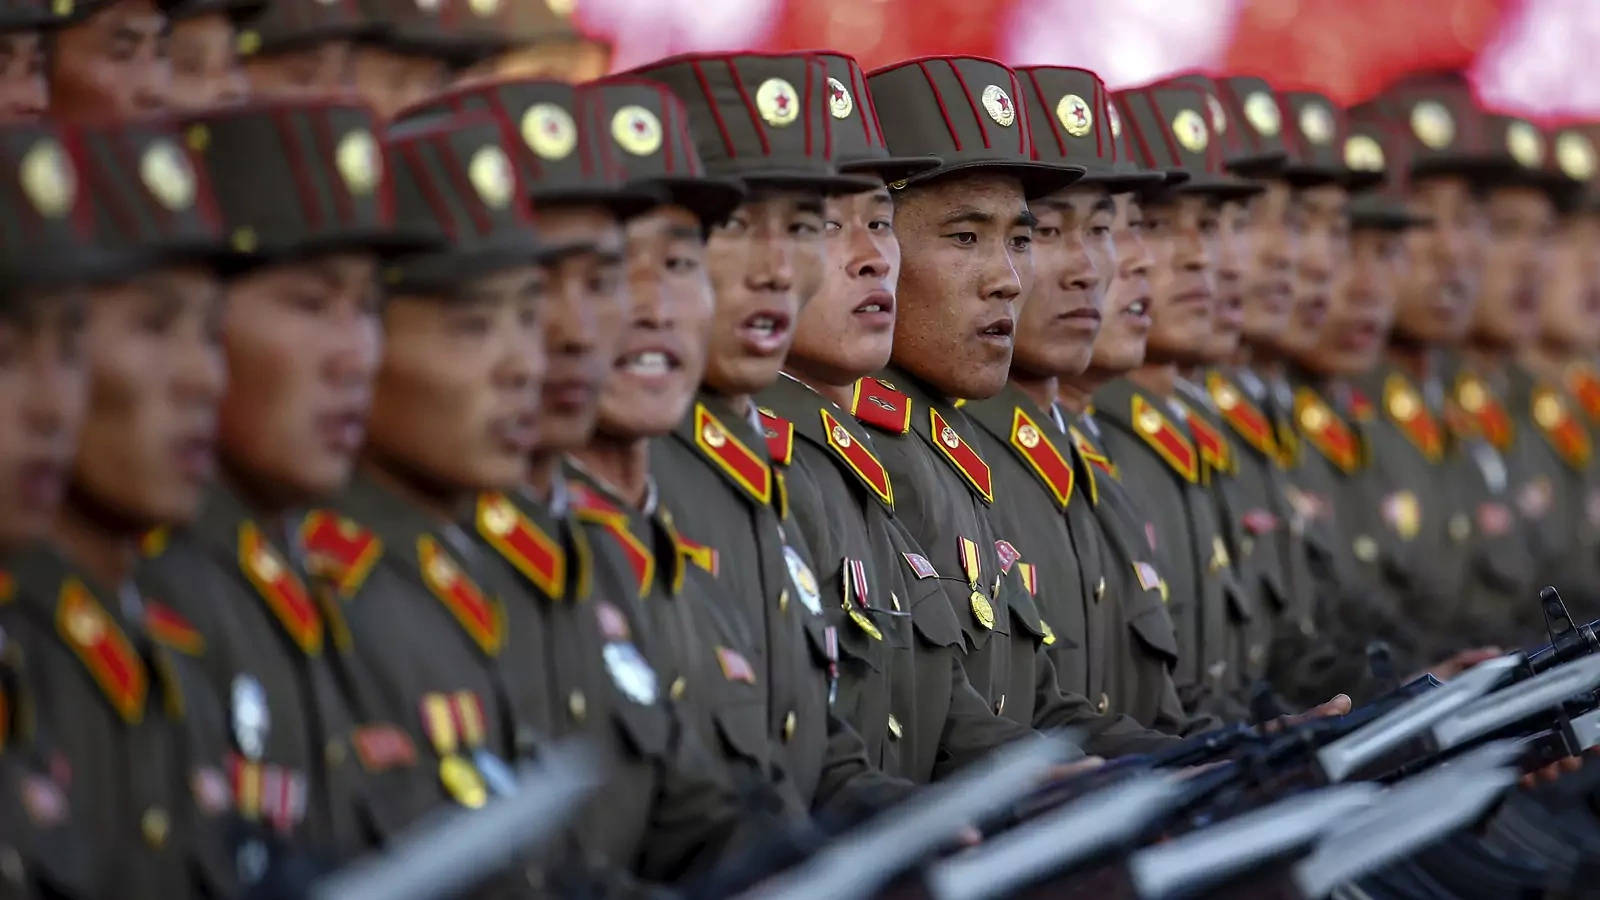 Nordkoreasoldaten In Reih Und Glied Aufgereiht Wallpaper